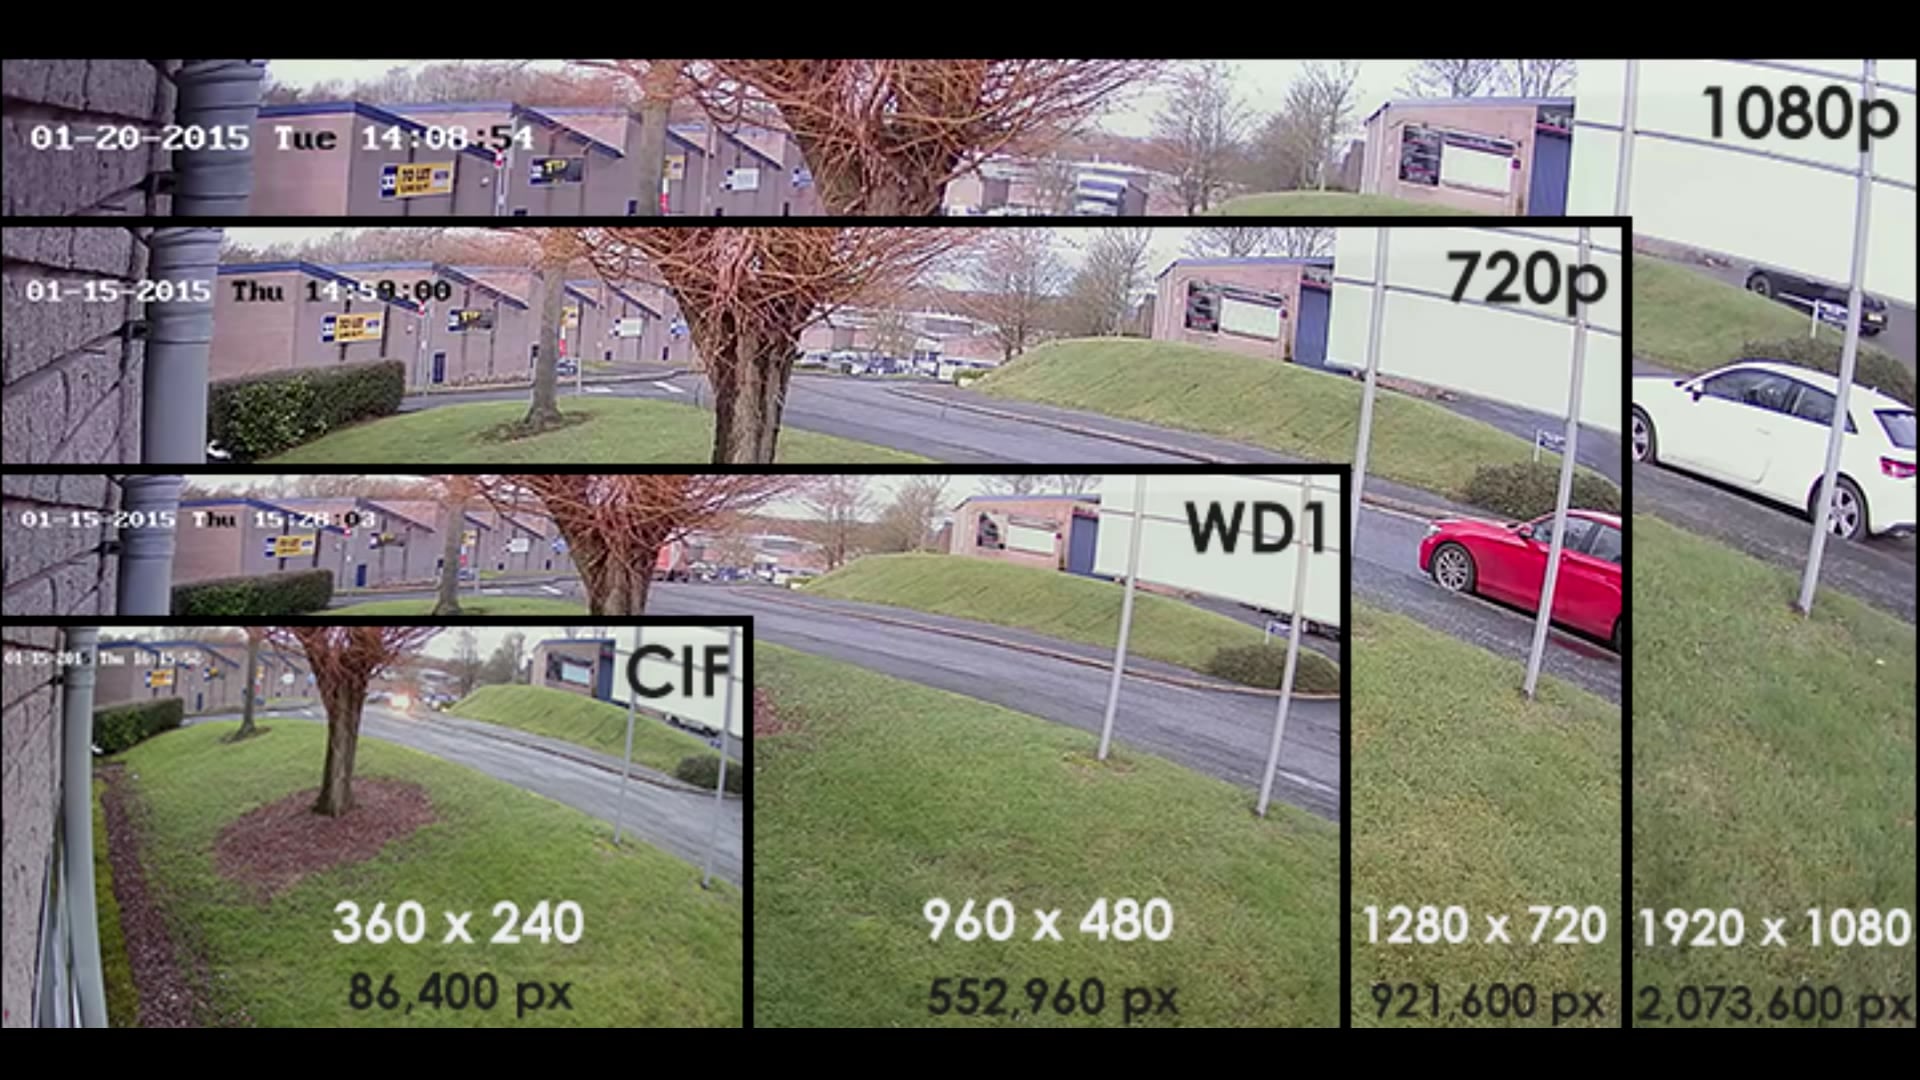 Sd качество видео. Разрешение IP камер таблица. Качество изображения. Разрешение видеокамеры в мегапикселях. Разрешение камеры 1.3 мегапикселя.